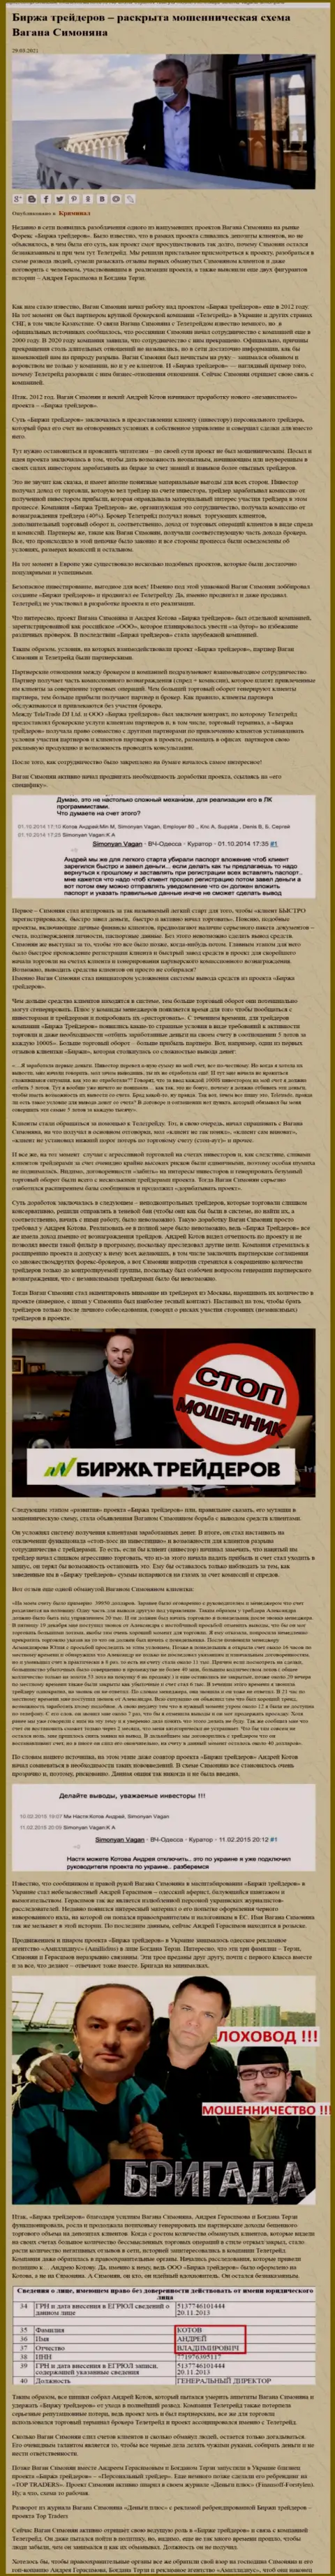 Продвижением фирмы Биржа Трейдеров, тесно связанной с мошенниками TeleTrade Org, также занимался Богдан Терзи